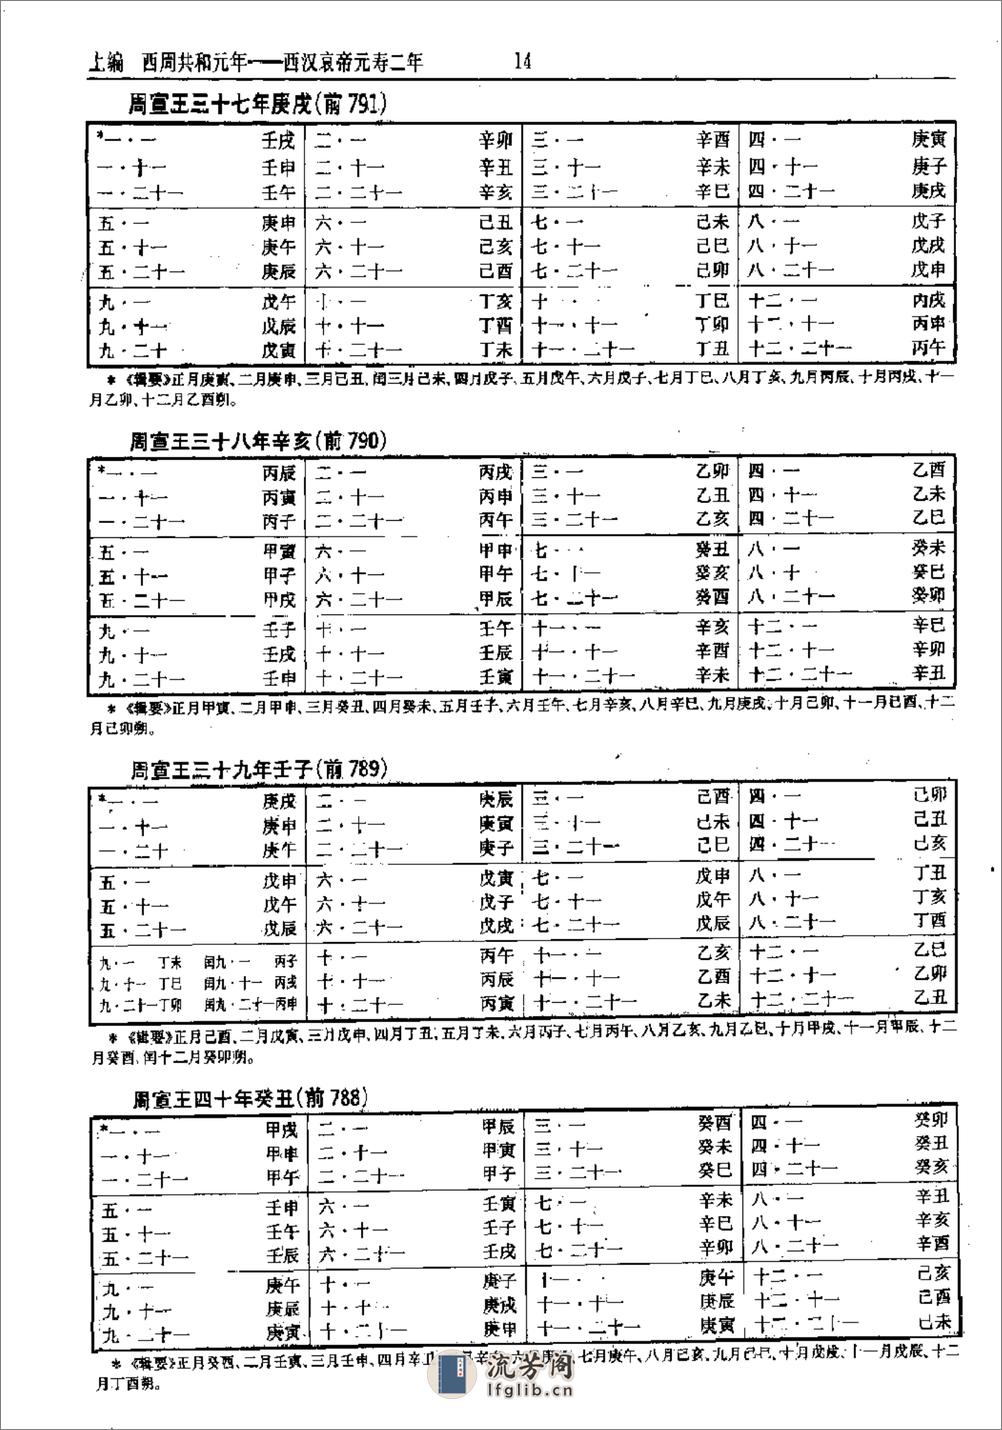 中国史历日和中西历日对照表·方诗铭·上海辞书1 - 第19页预览图